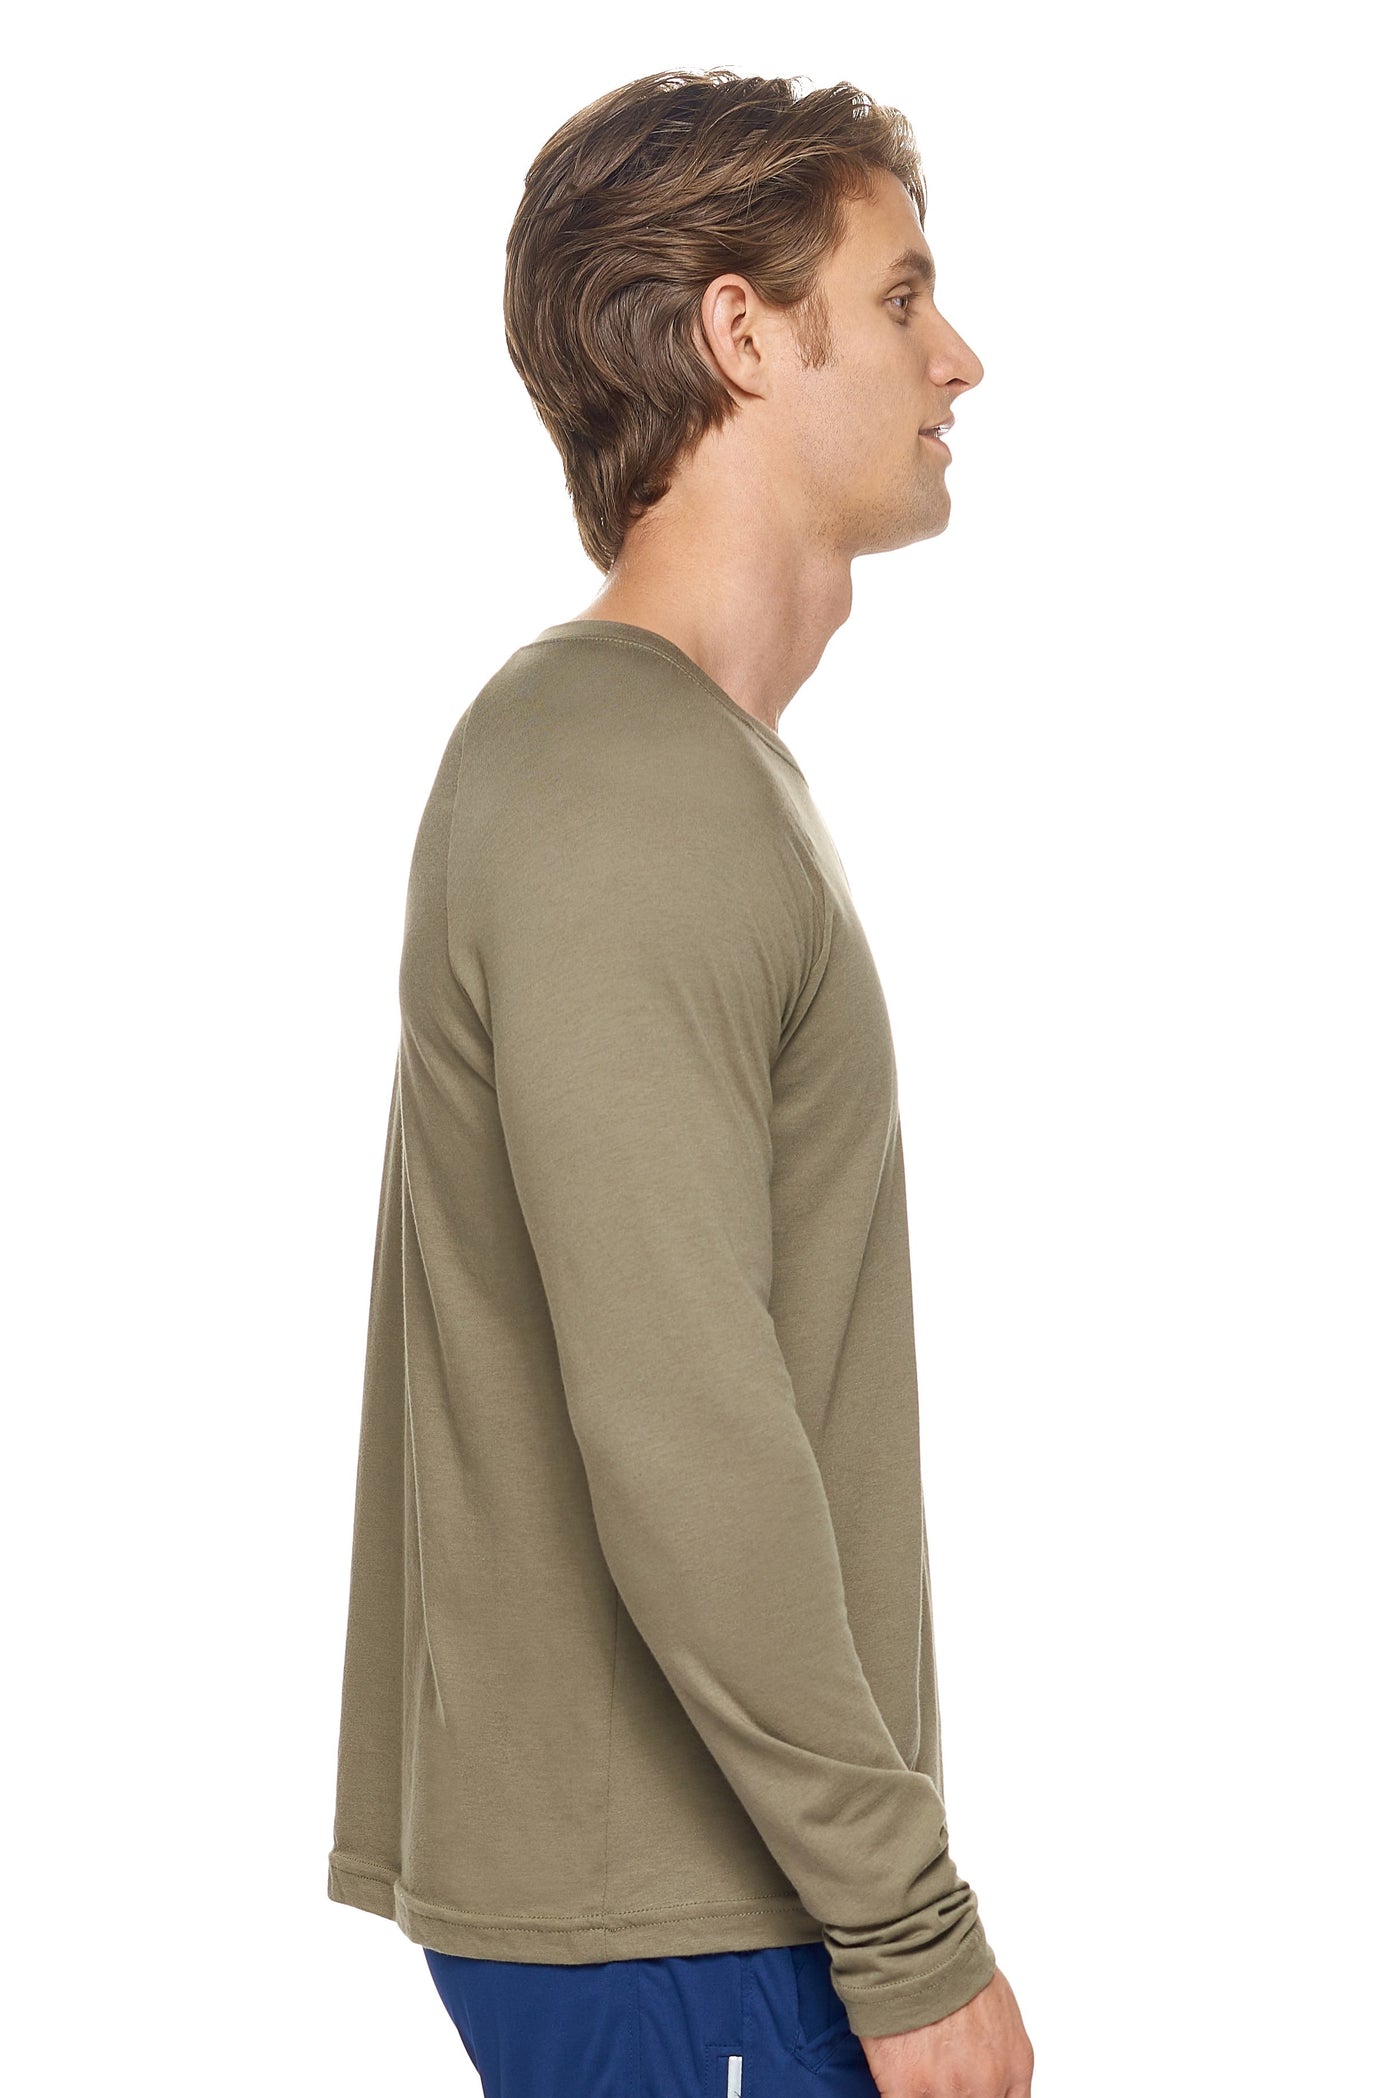 Expert Brand Men's MoCA™ Long Sleeve Raglan Shirt in Olive Image 2#color_olive